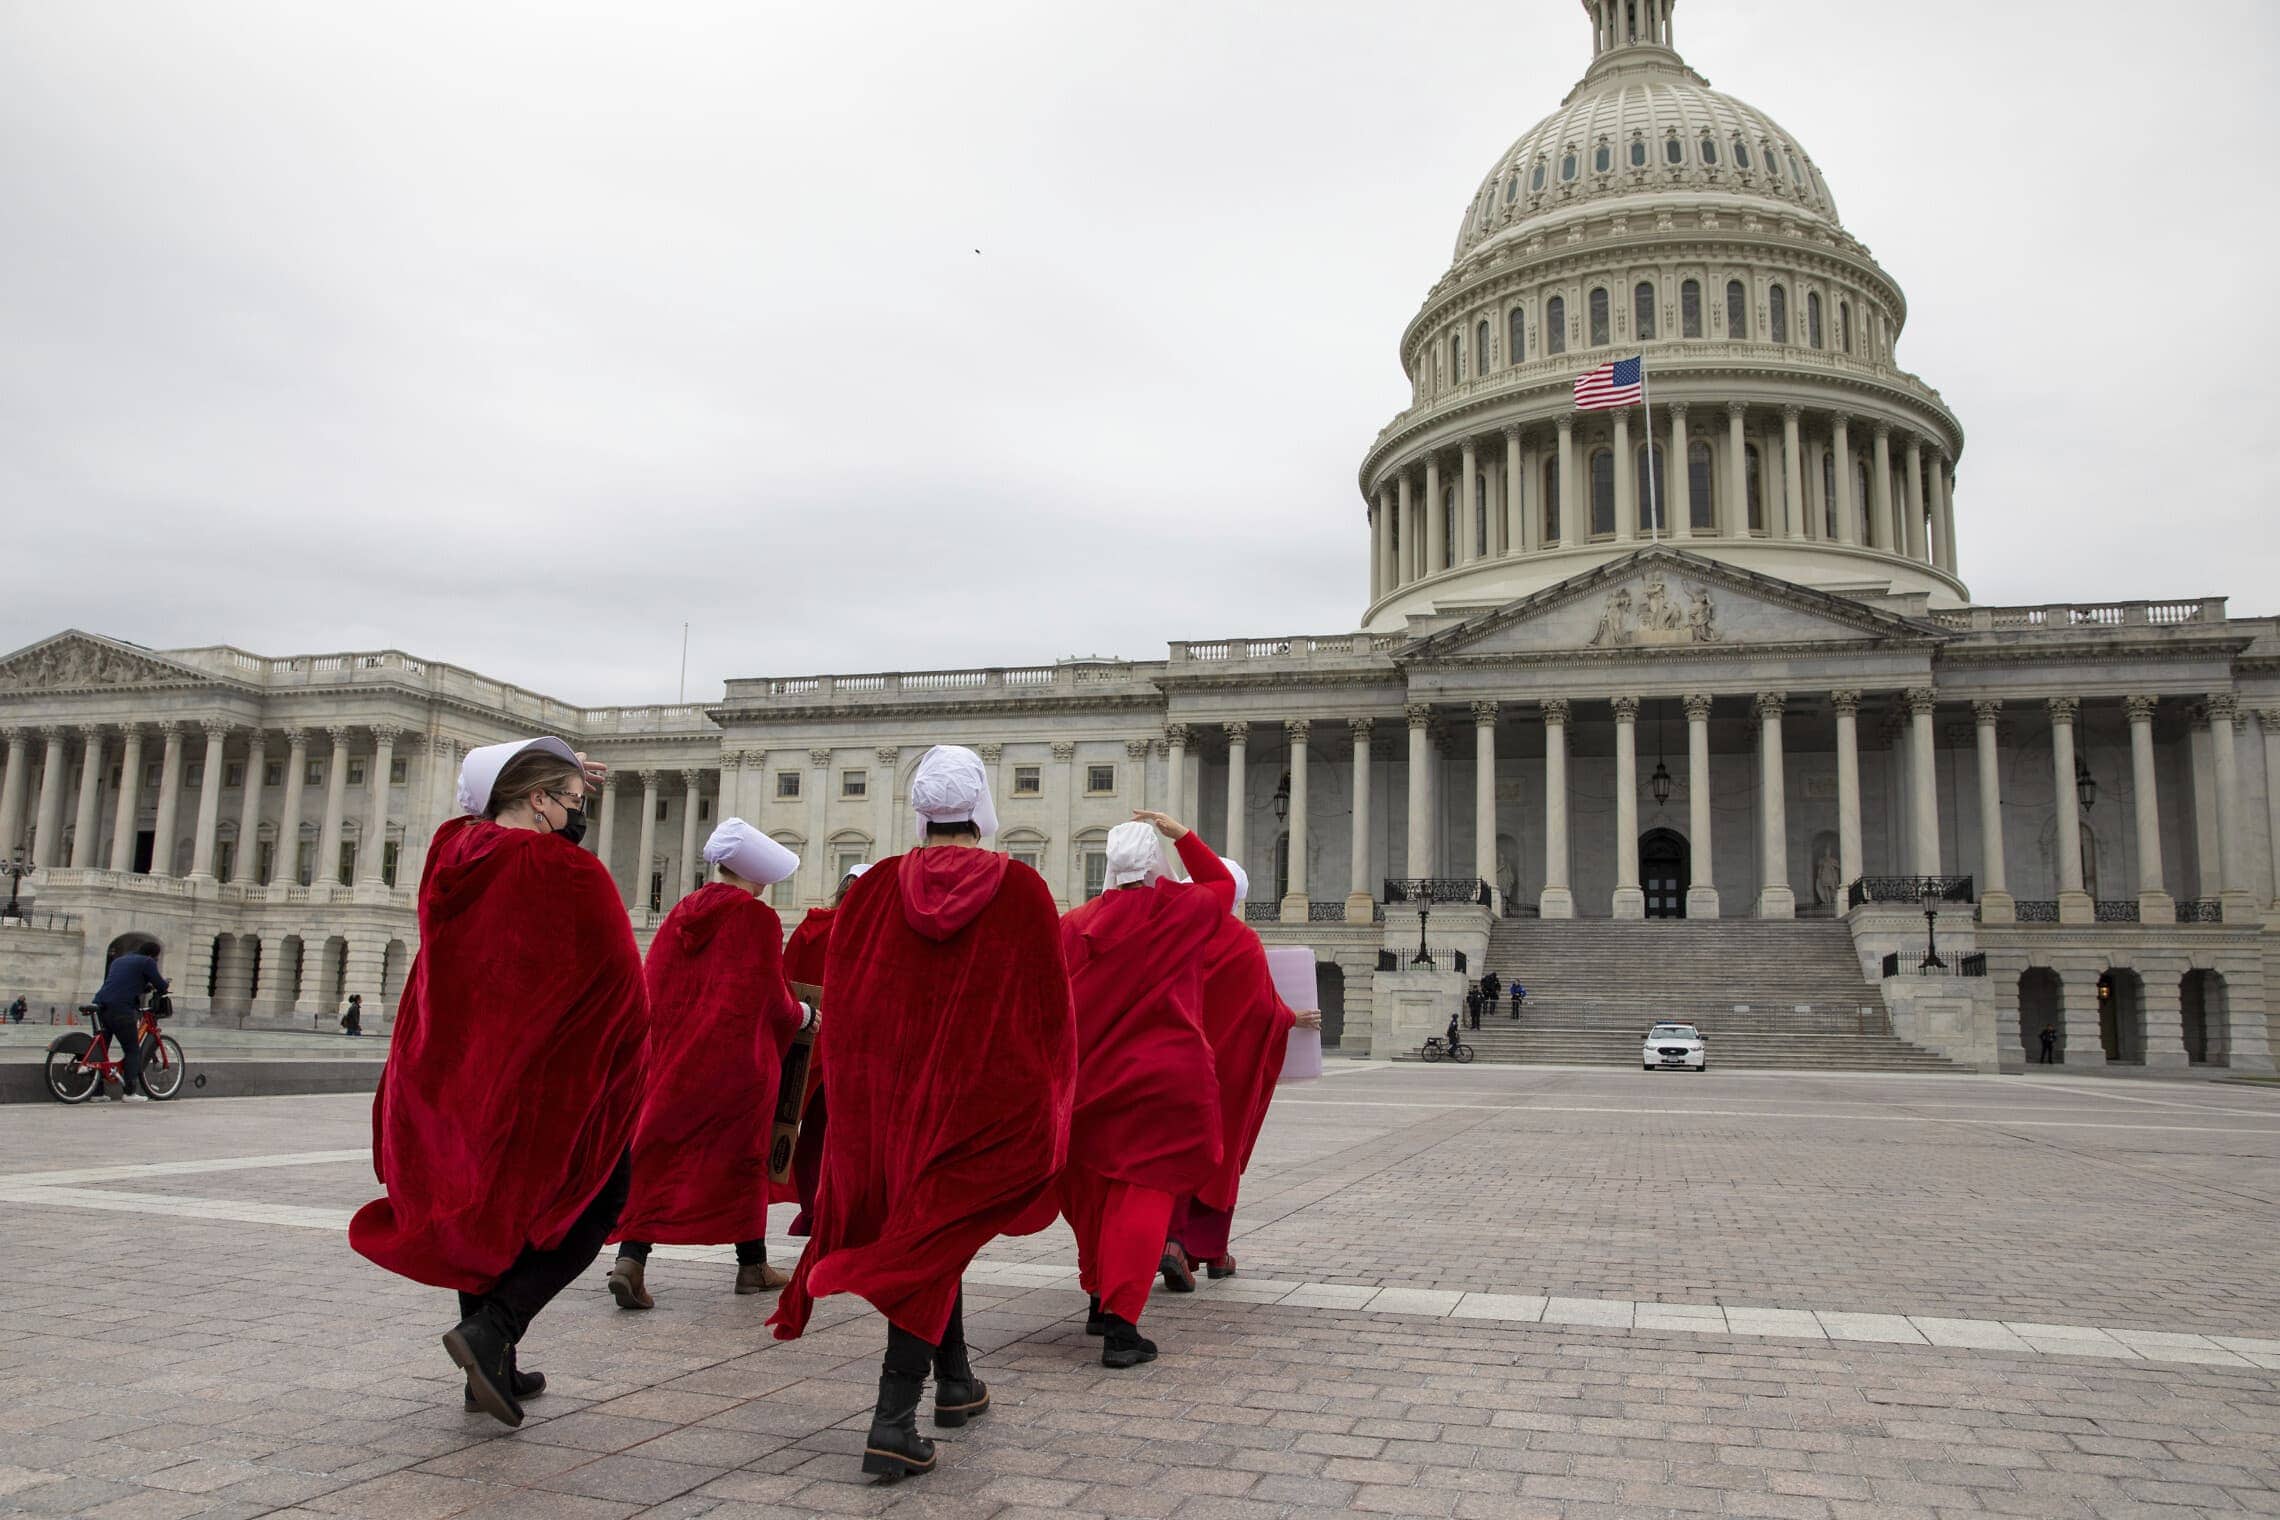 מפגינות למען הזכות להפלות לבושות במדי "סיפורה של שפחה" צועדות לעבר בית המשפט העליון האמריקאי בוושינגטון הבירה, 8 במאי 2022 (צילום: AP Photo/Amanda Andrade-Rhoades)